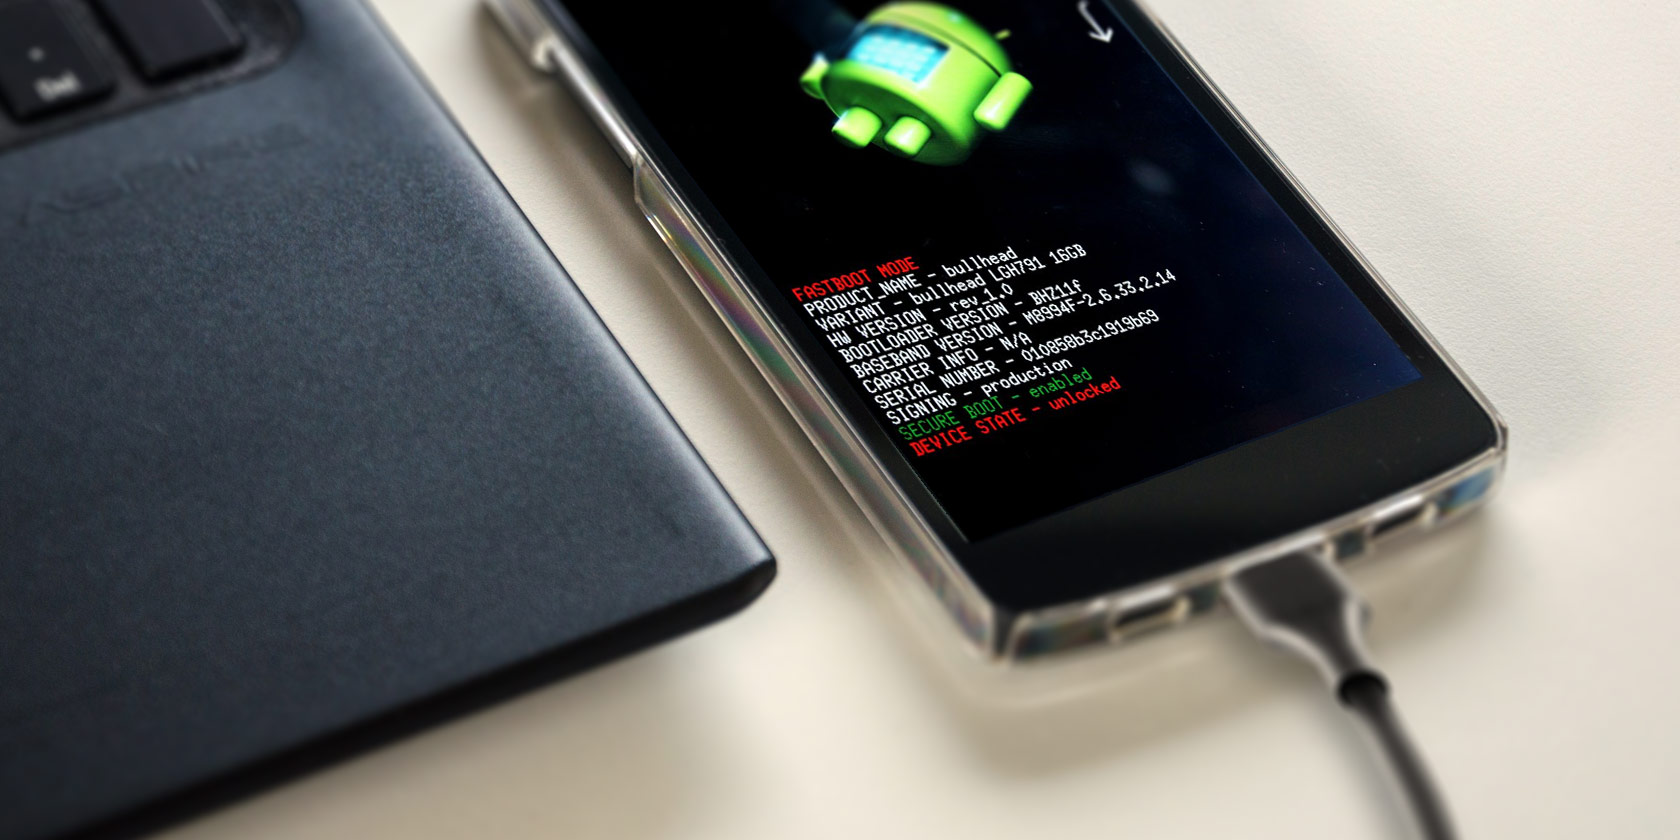 Hướng dẫn cách cài đặt ADB, Fastboot trên Android và sử dụng các lệnh cơ bản